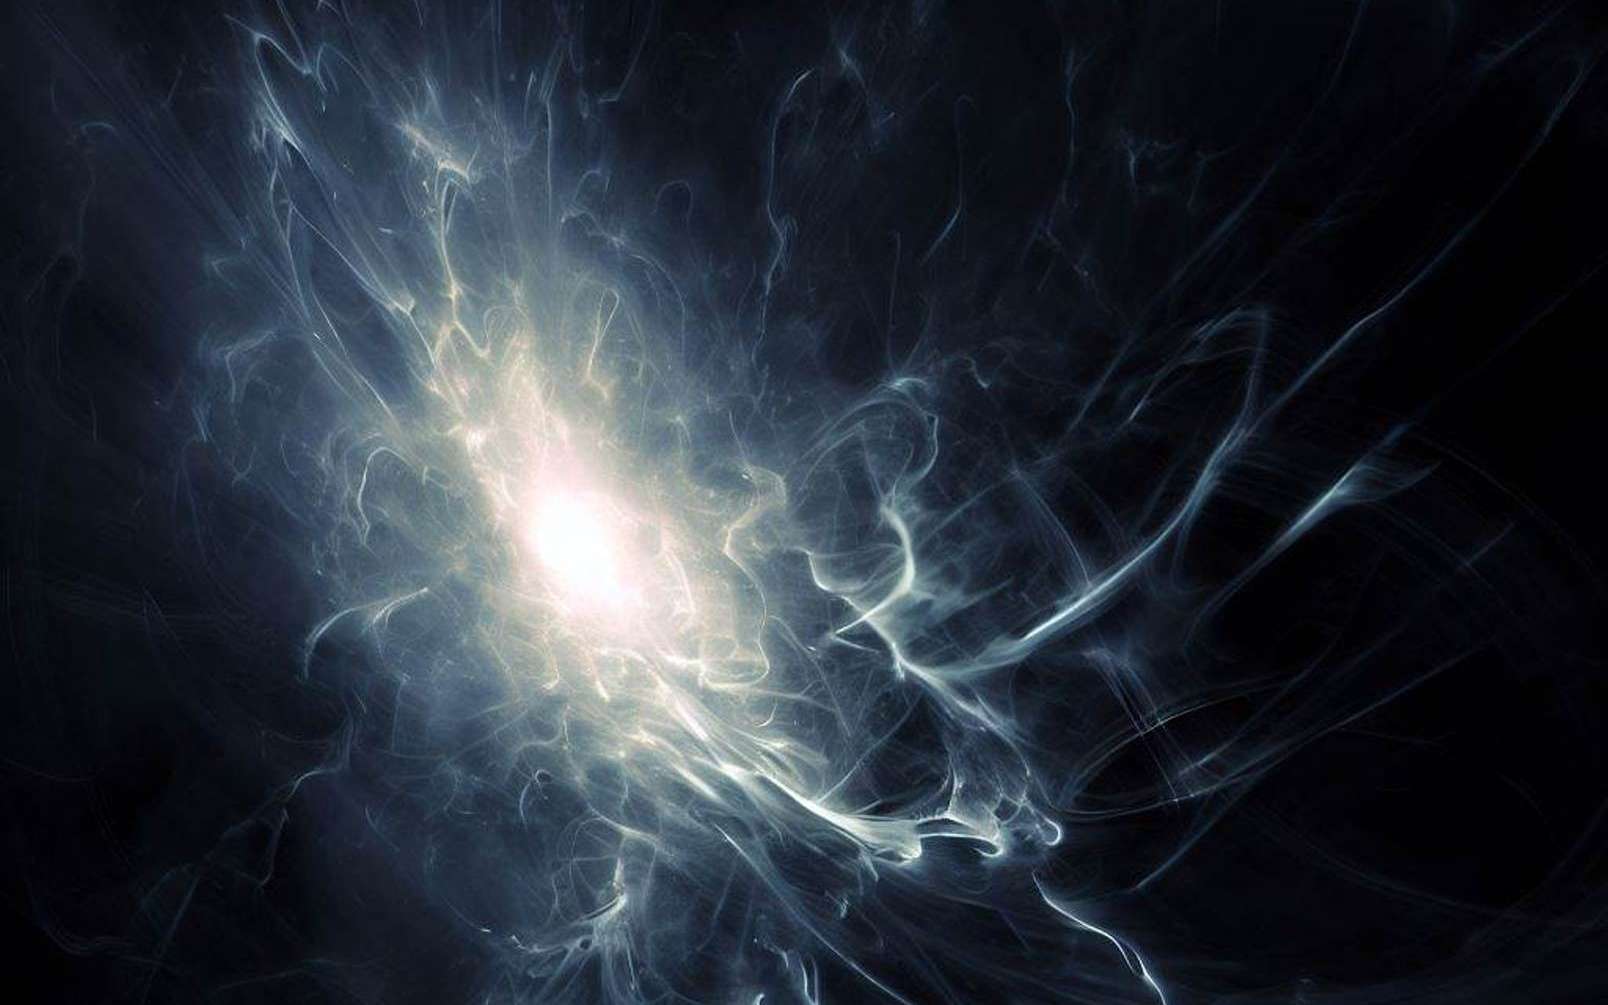 Dernières nouvelles de l'énergie noire : elle pourrait varier dans le temps et, pourquoi pas, recontracter l'Univers